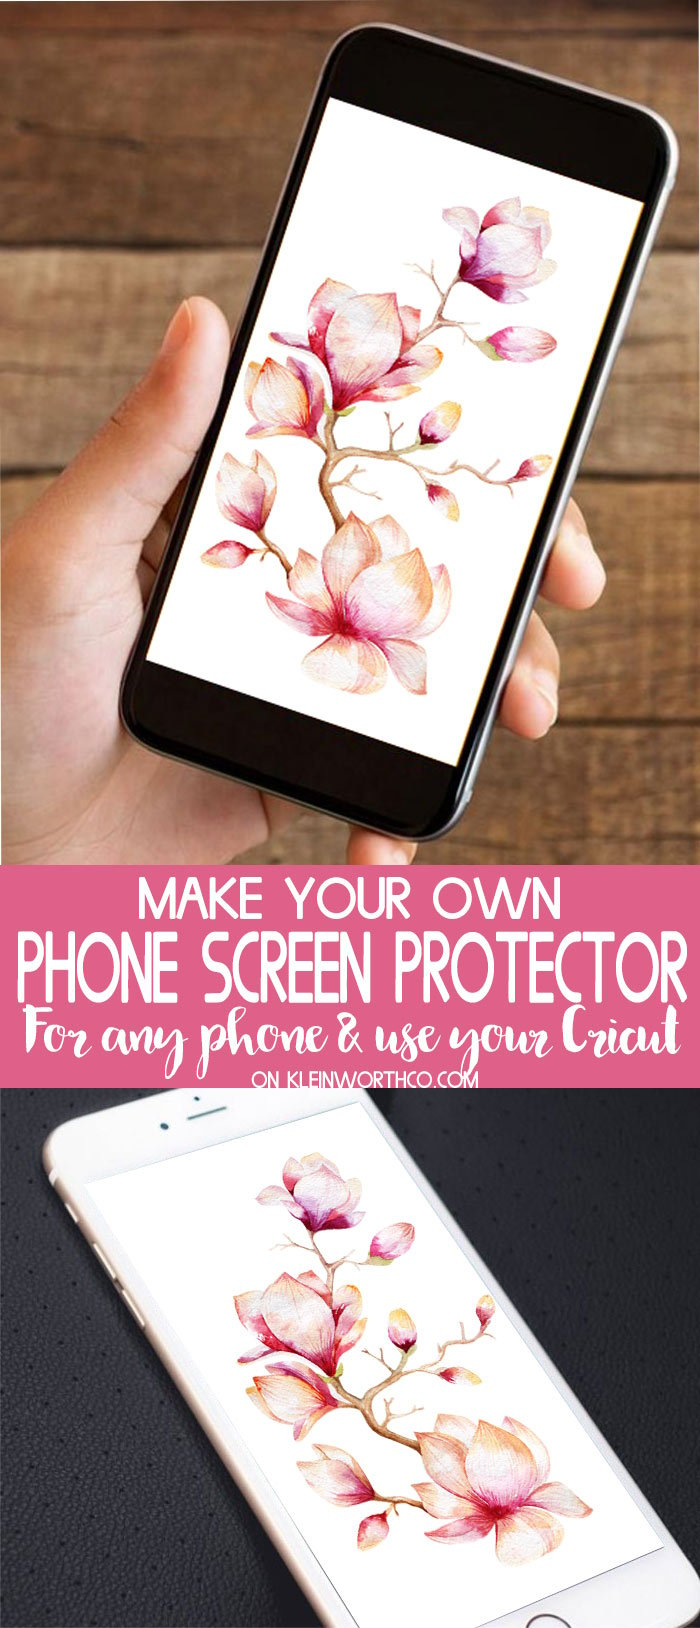 DIY Phone Screen Protector